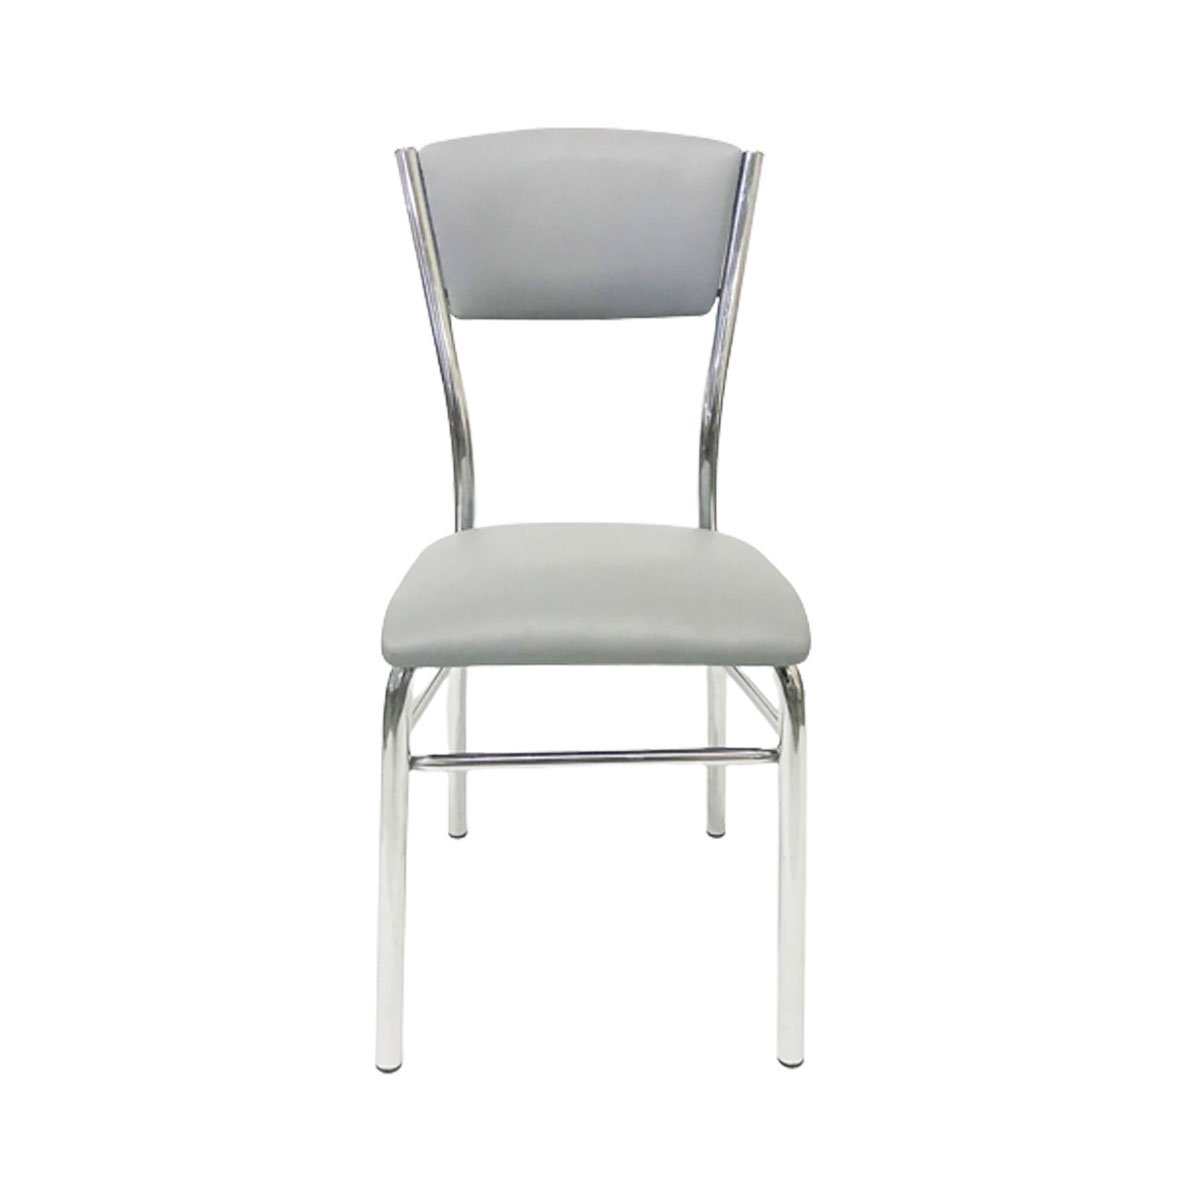 Kit 2 Cadeiras de Cozinha com Reforço Cromada Assento e Encosto Cinza - Poltronas do Sul - 5